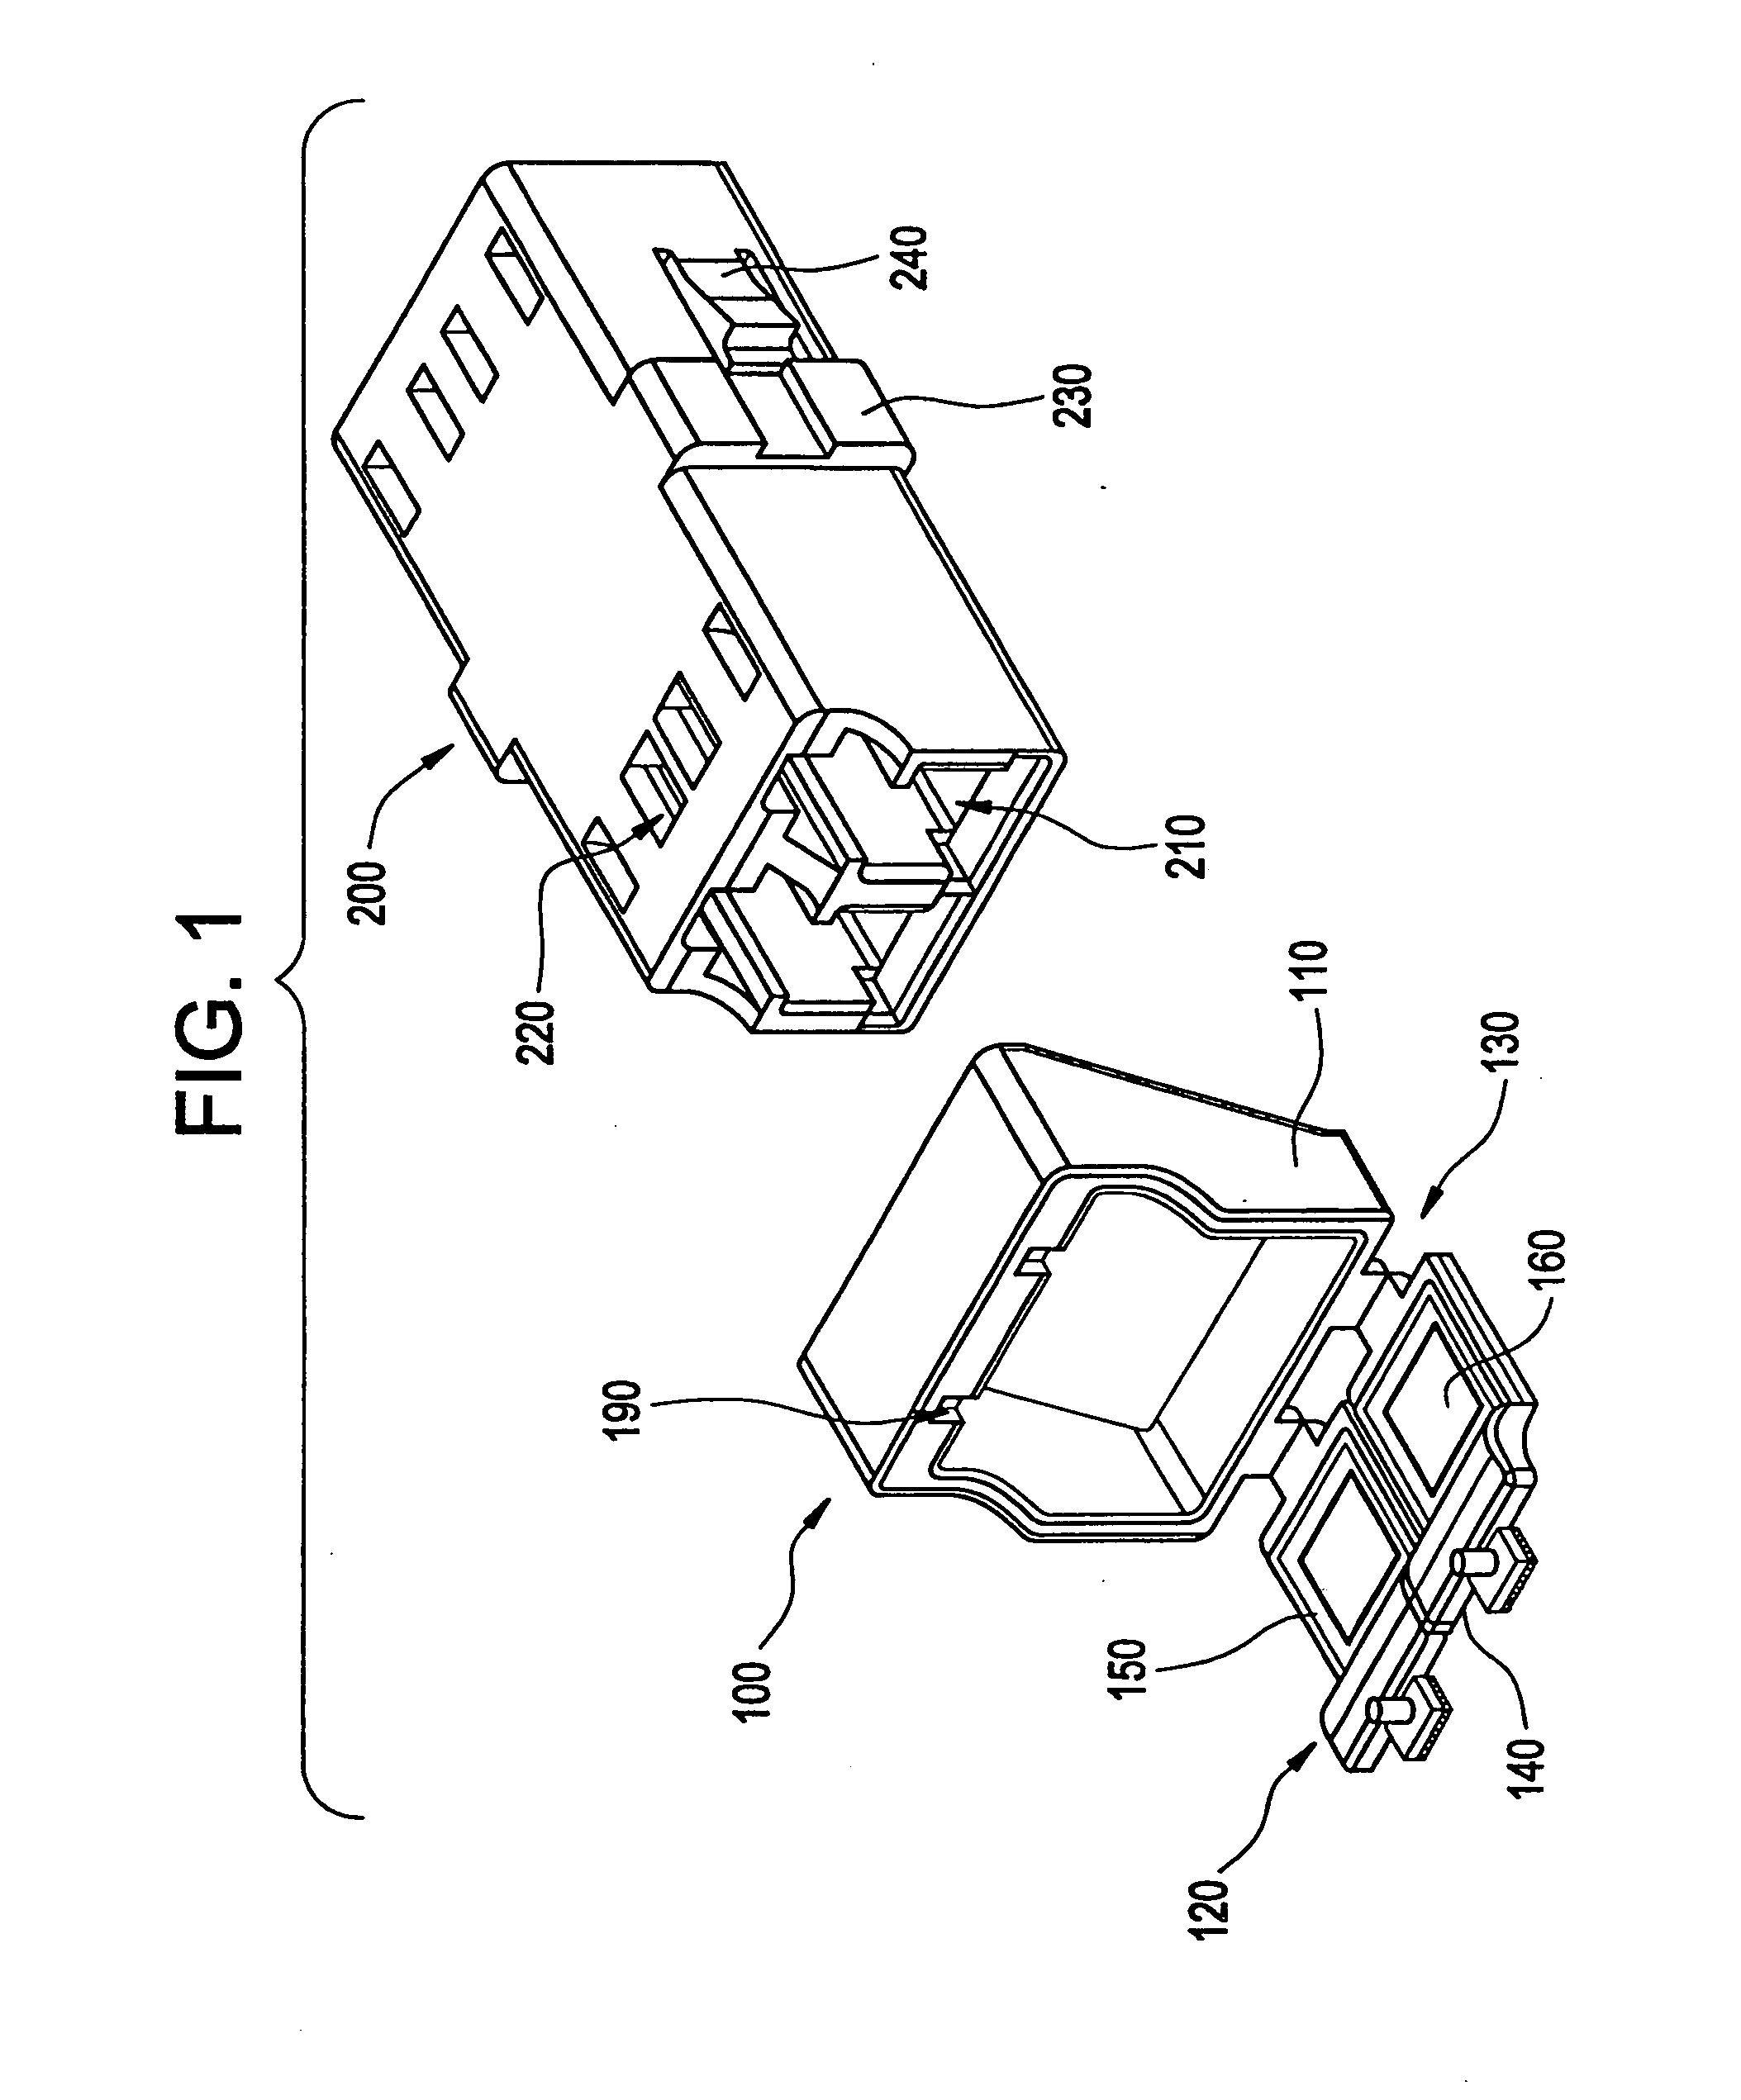 Dust shutter for an optical adapter